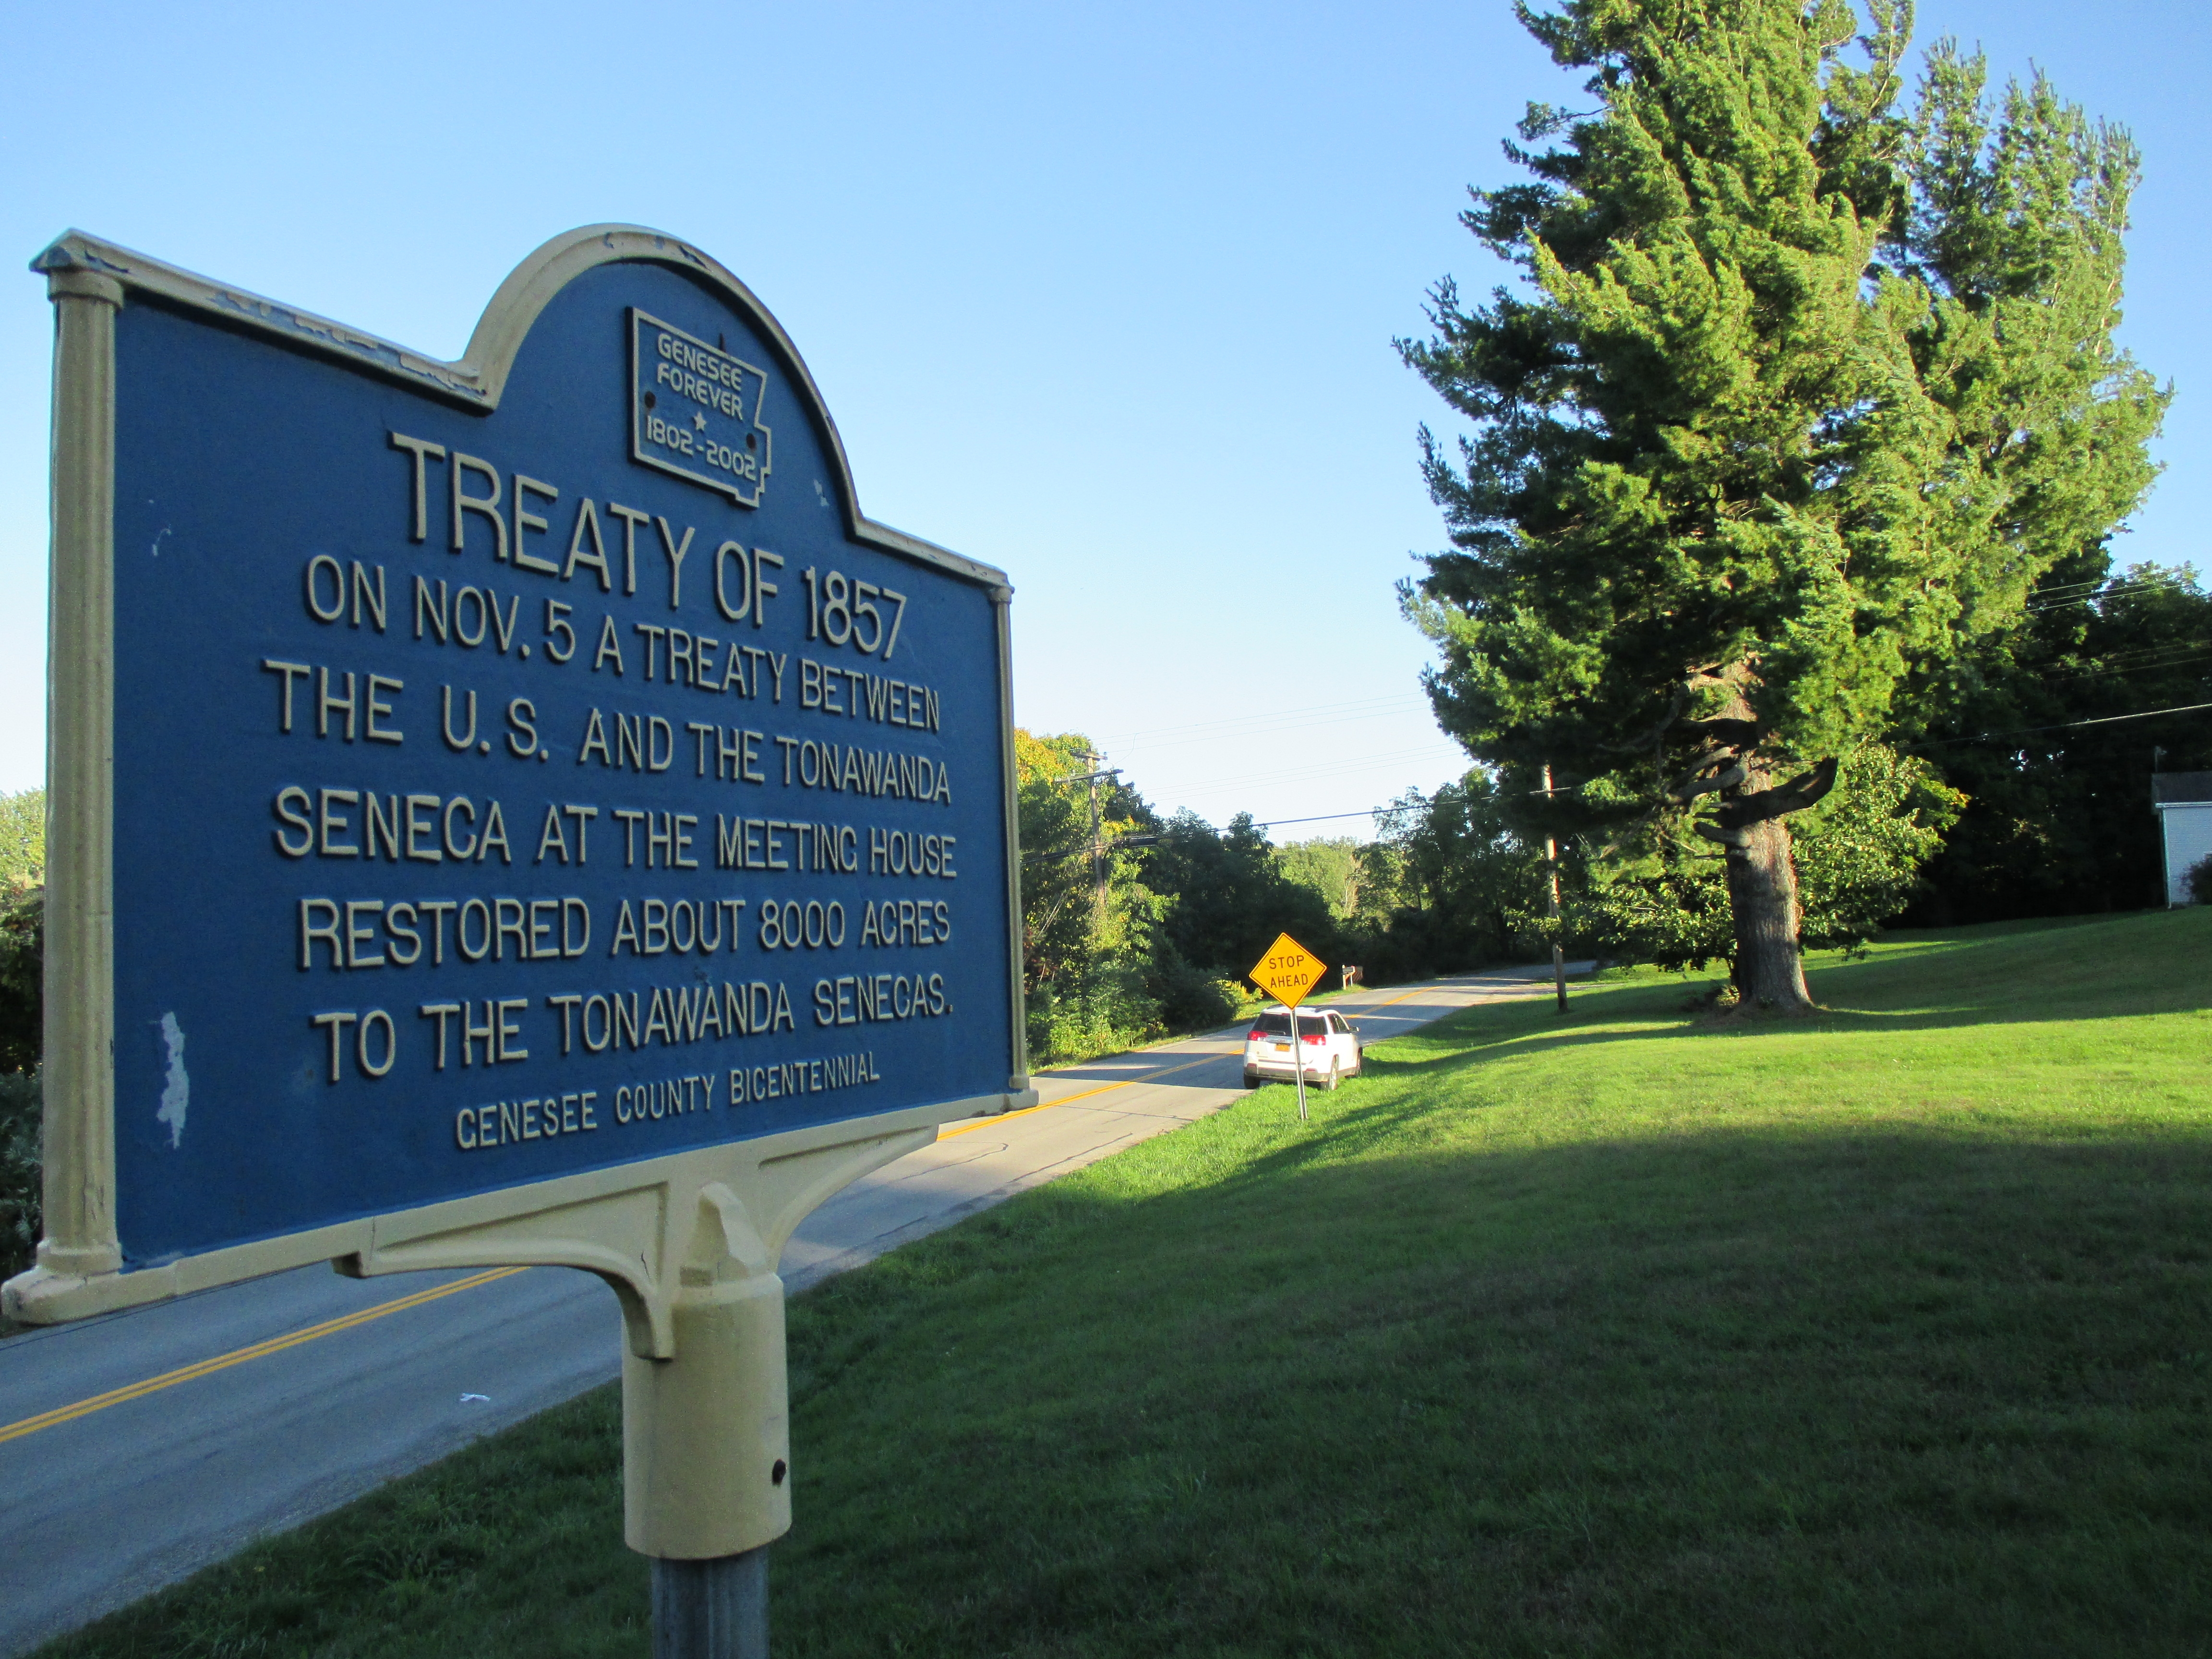 Treaty of 1857 Marker